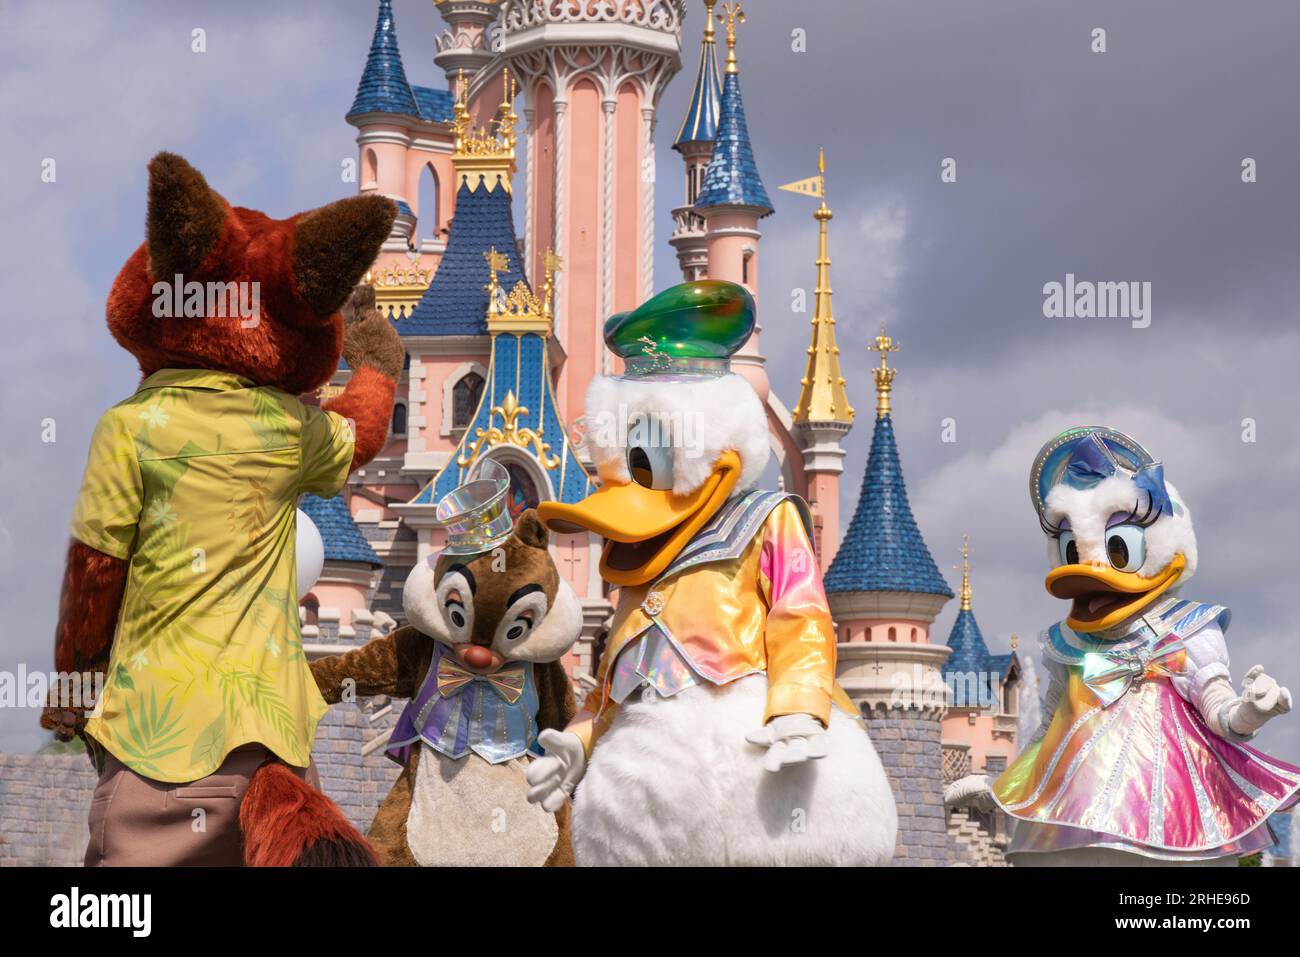 Disneyland Paris ; les personnages Disney et le château de Disneyland dansent dans la parade de Disneyland ; Nick Wilde le renard ; Chip, Donald Duck et Daffy Duck Banque D'Images